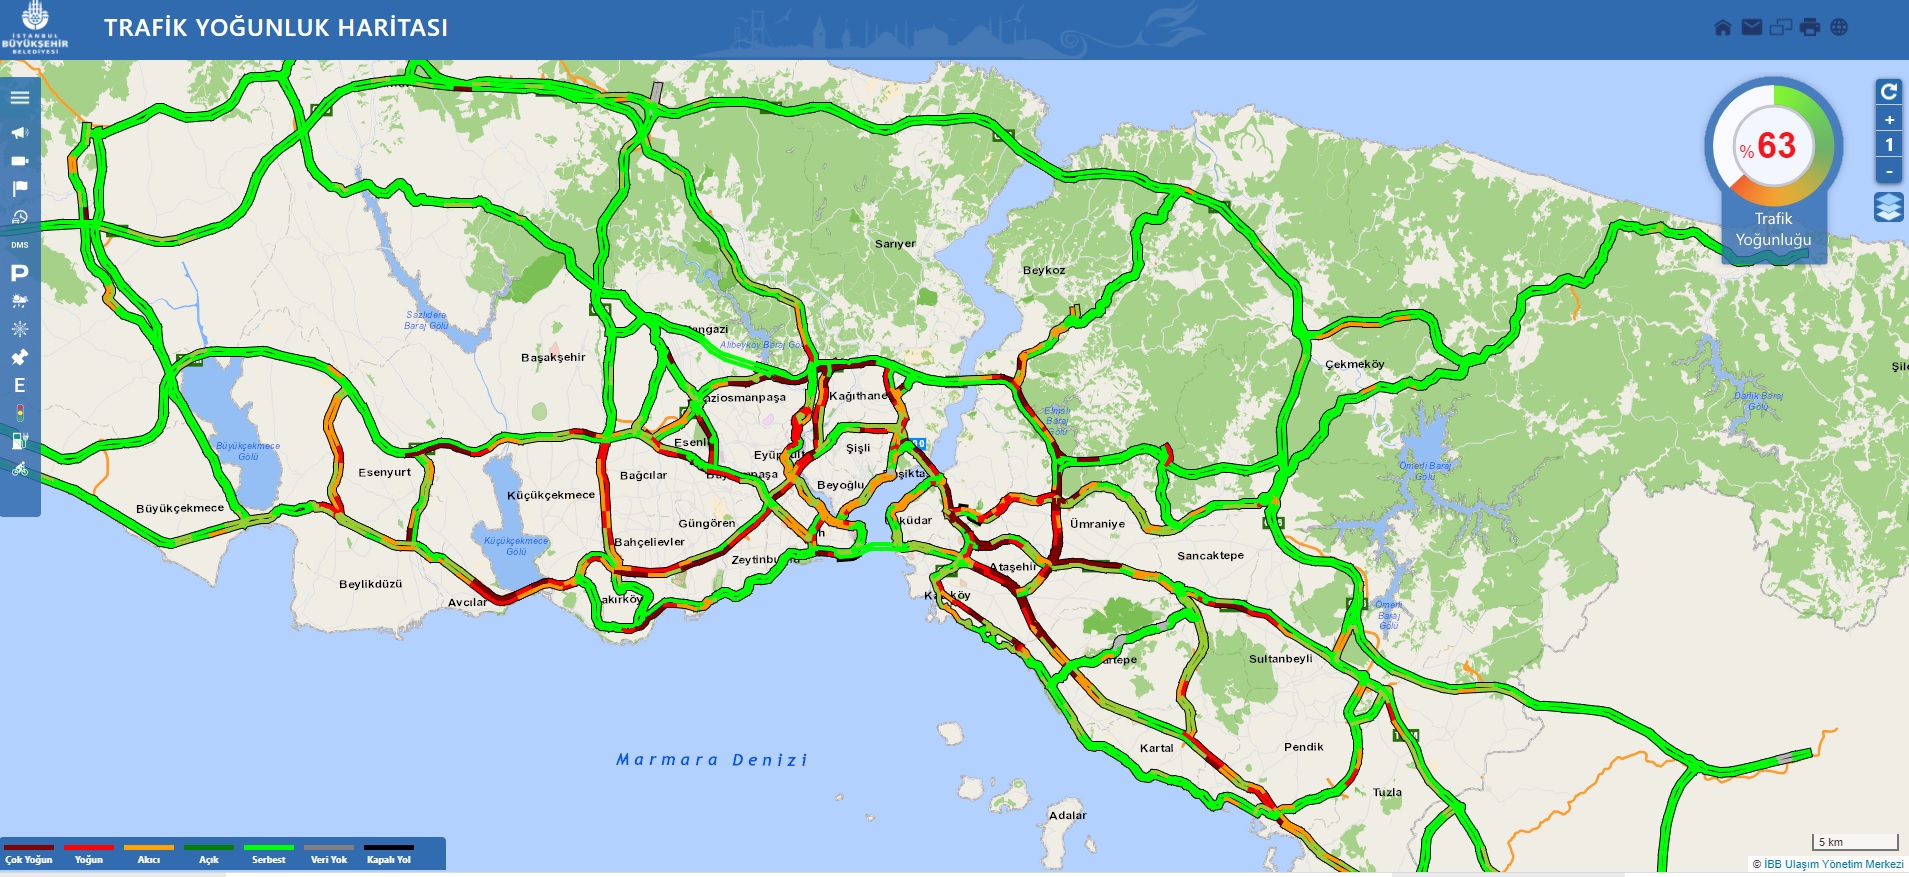 İstanbul’da haftanın ilk iş gününde trafik yoğunluğu erken saatlerden itibaren etkili olmaya başladı. Yoğunluk yüzde 45 olarak ölçümlendi. D-100 Karayolu üzerinde yoğun sisle birlikte trafik yer yer durma noktasına geldi. İlerleyen saatlerde trafik yoğunluğu yüzde 63’e çıktı.